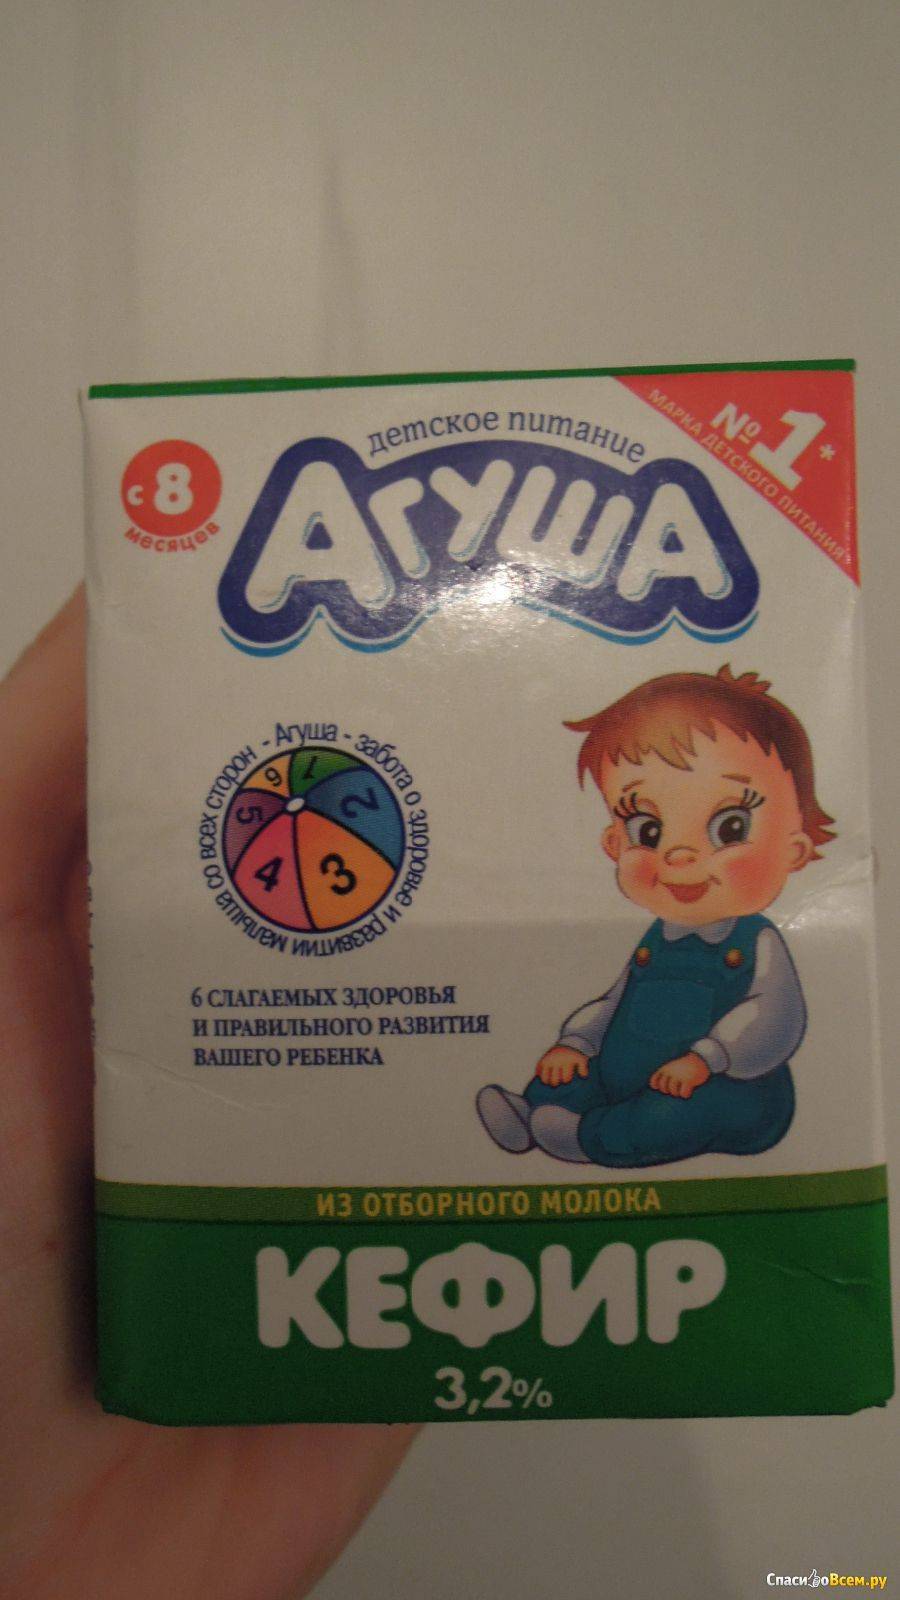 Детское питание - полезные рецепты для малышей с 7 месяцев - agulife.ru